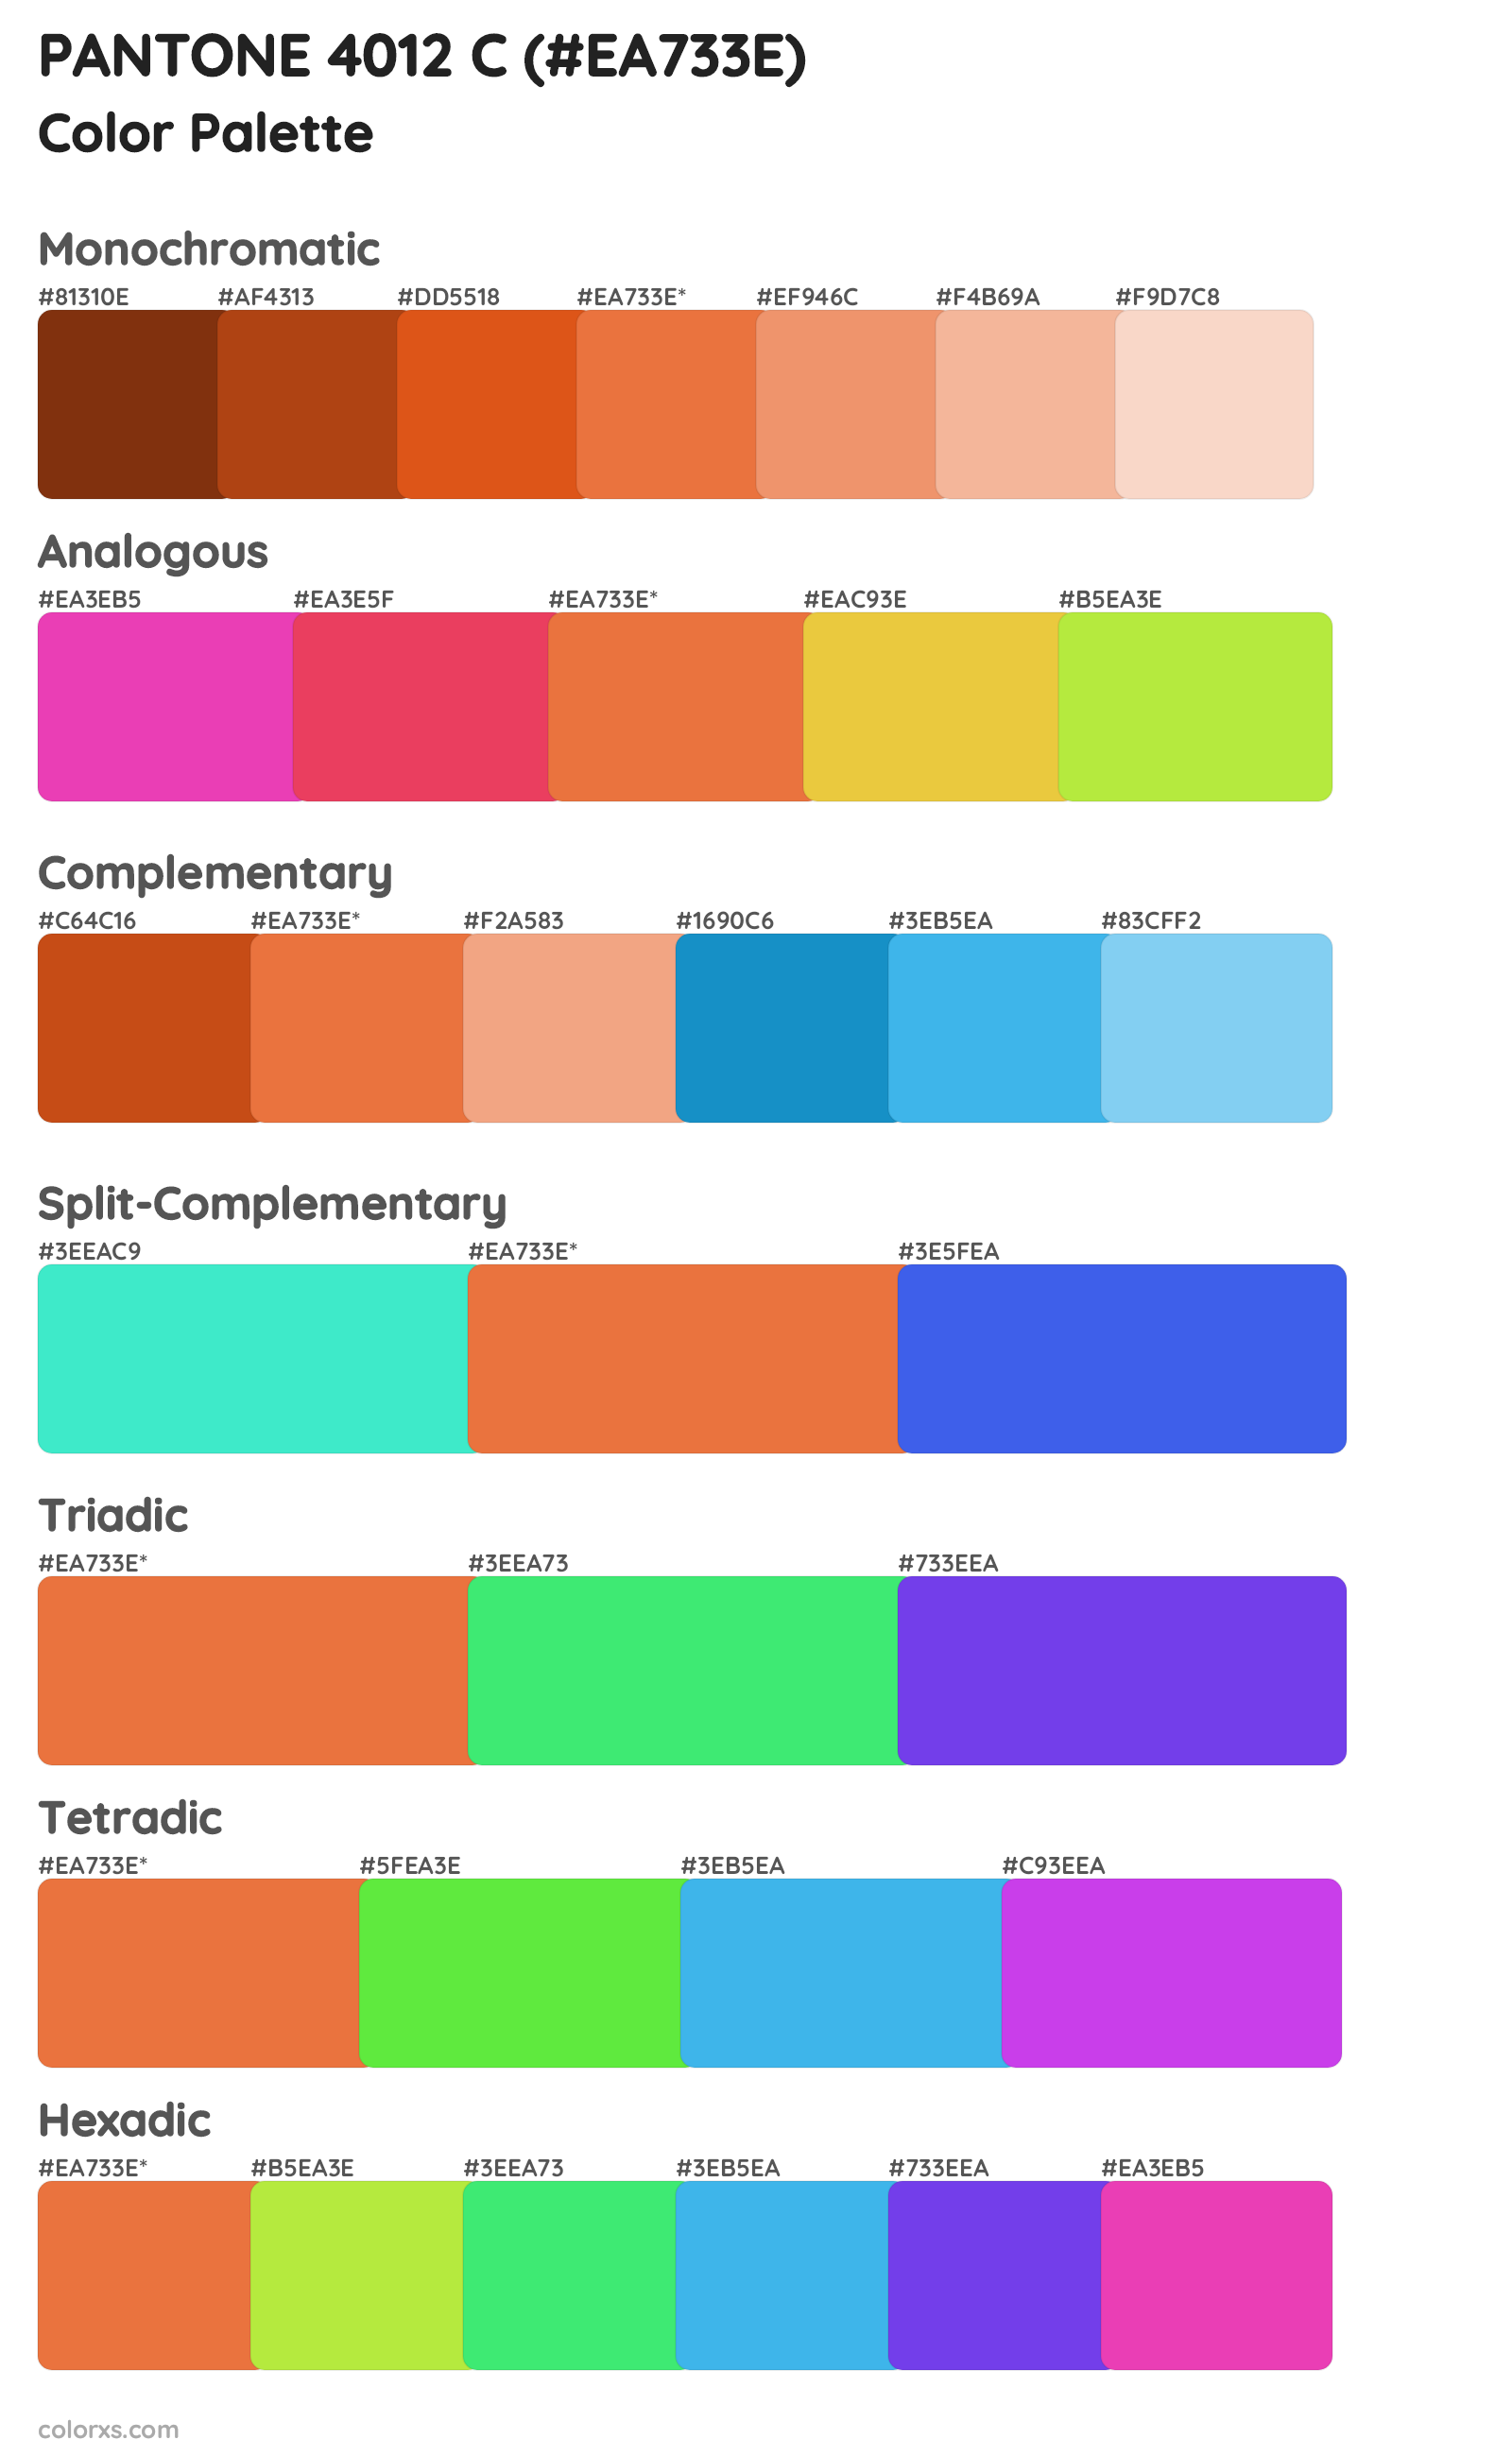 PANTONE 4012 C Color Scheme Palettes